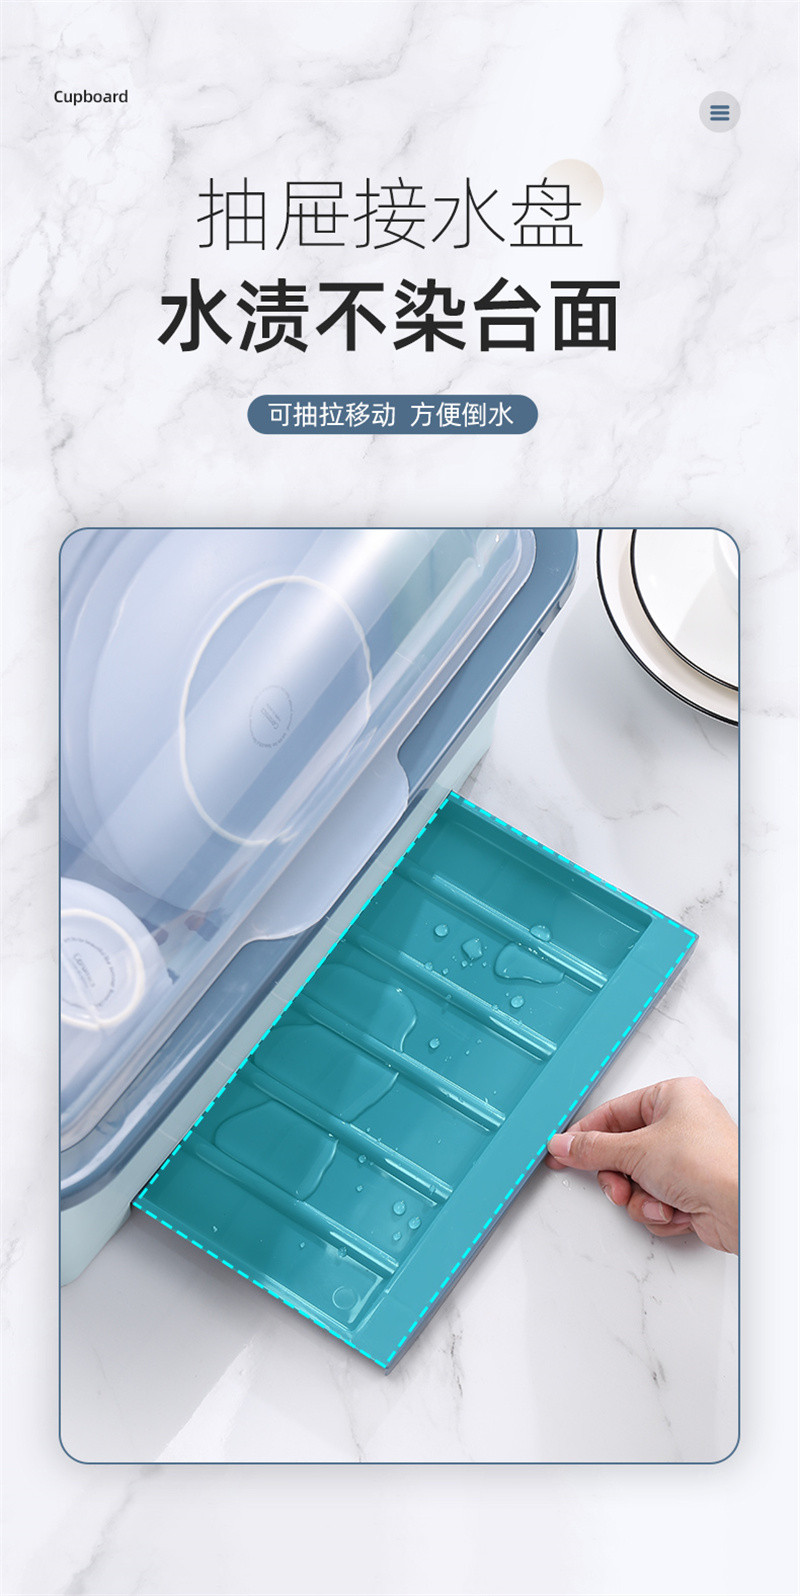 洛港 厨房碗碟碗盘收纳架餐具盒带盖沥水碗筷收纳箱/组